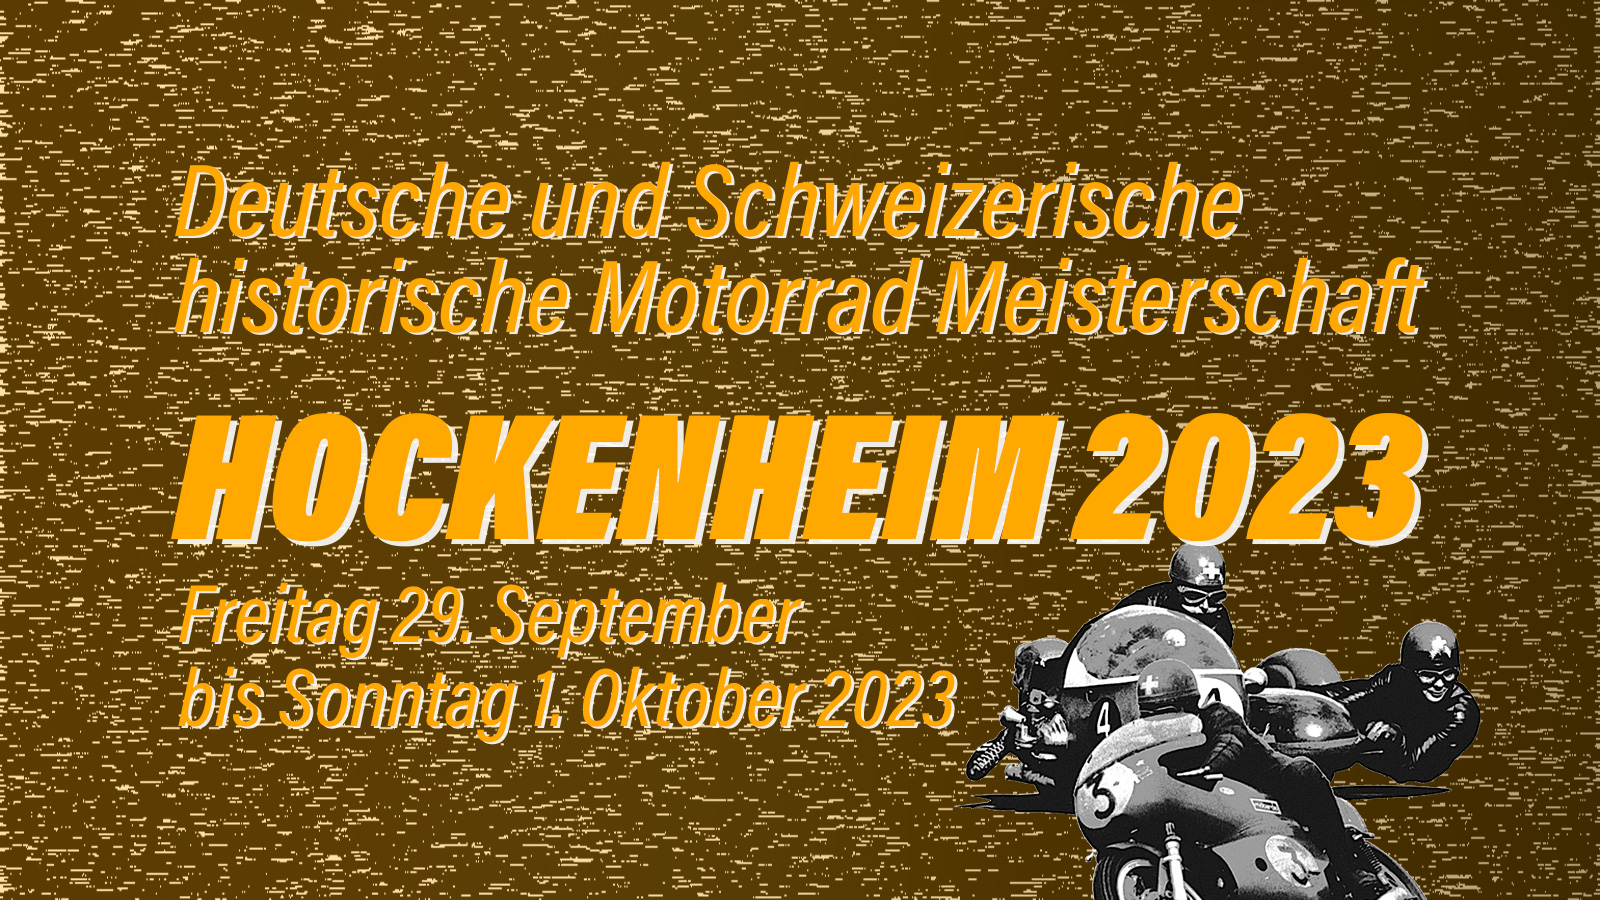 Abb 0001 Hockenheim 2023